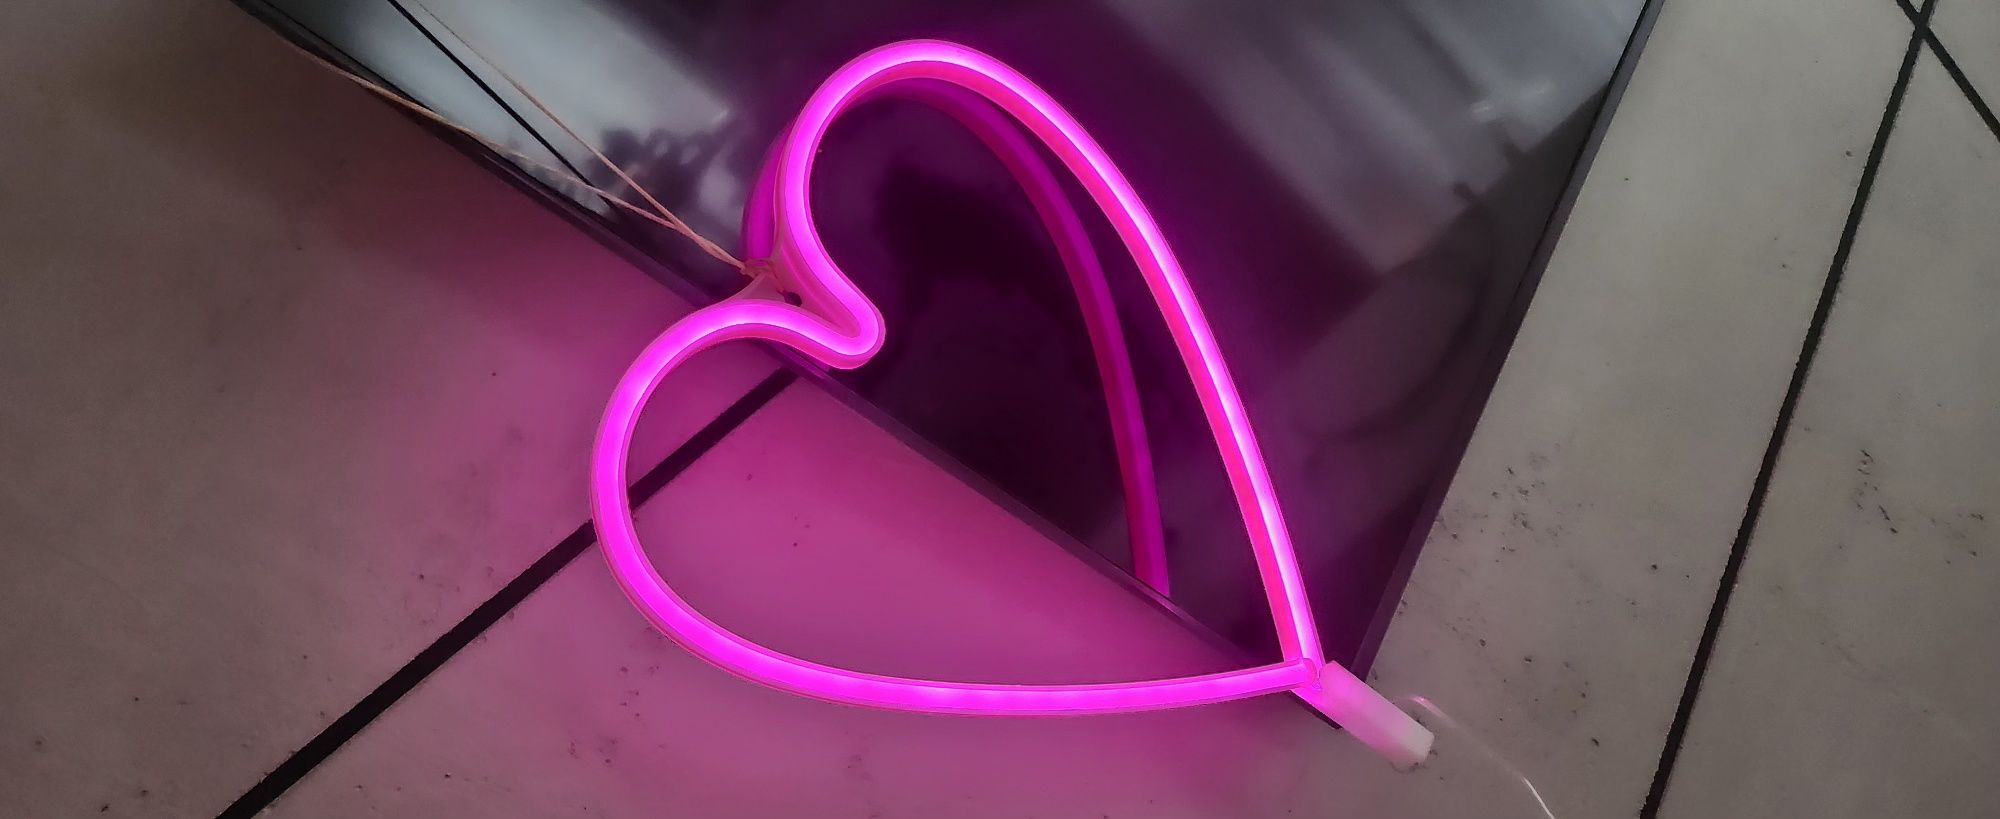 Neon serce, różowy na usb oraz baterie, serduszko lampa